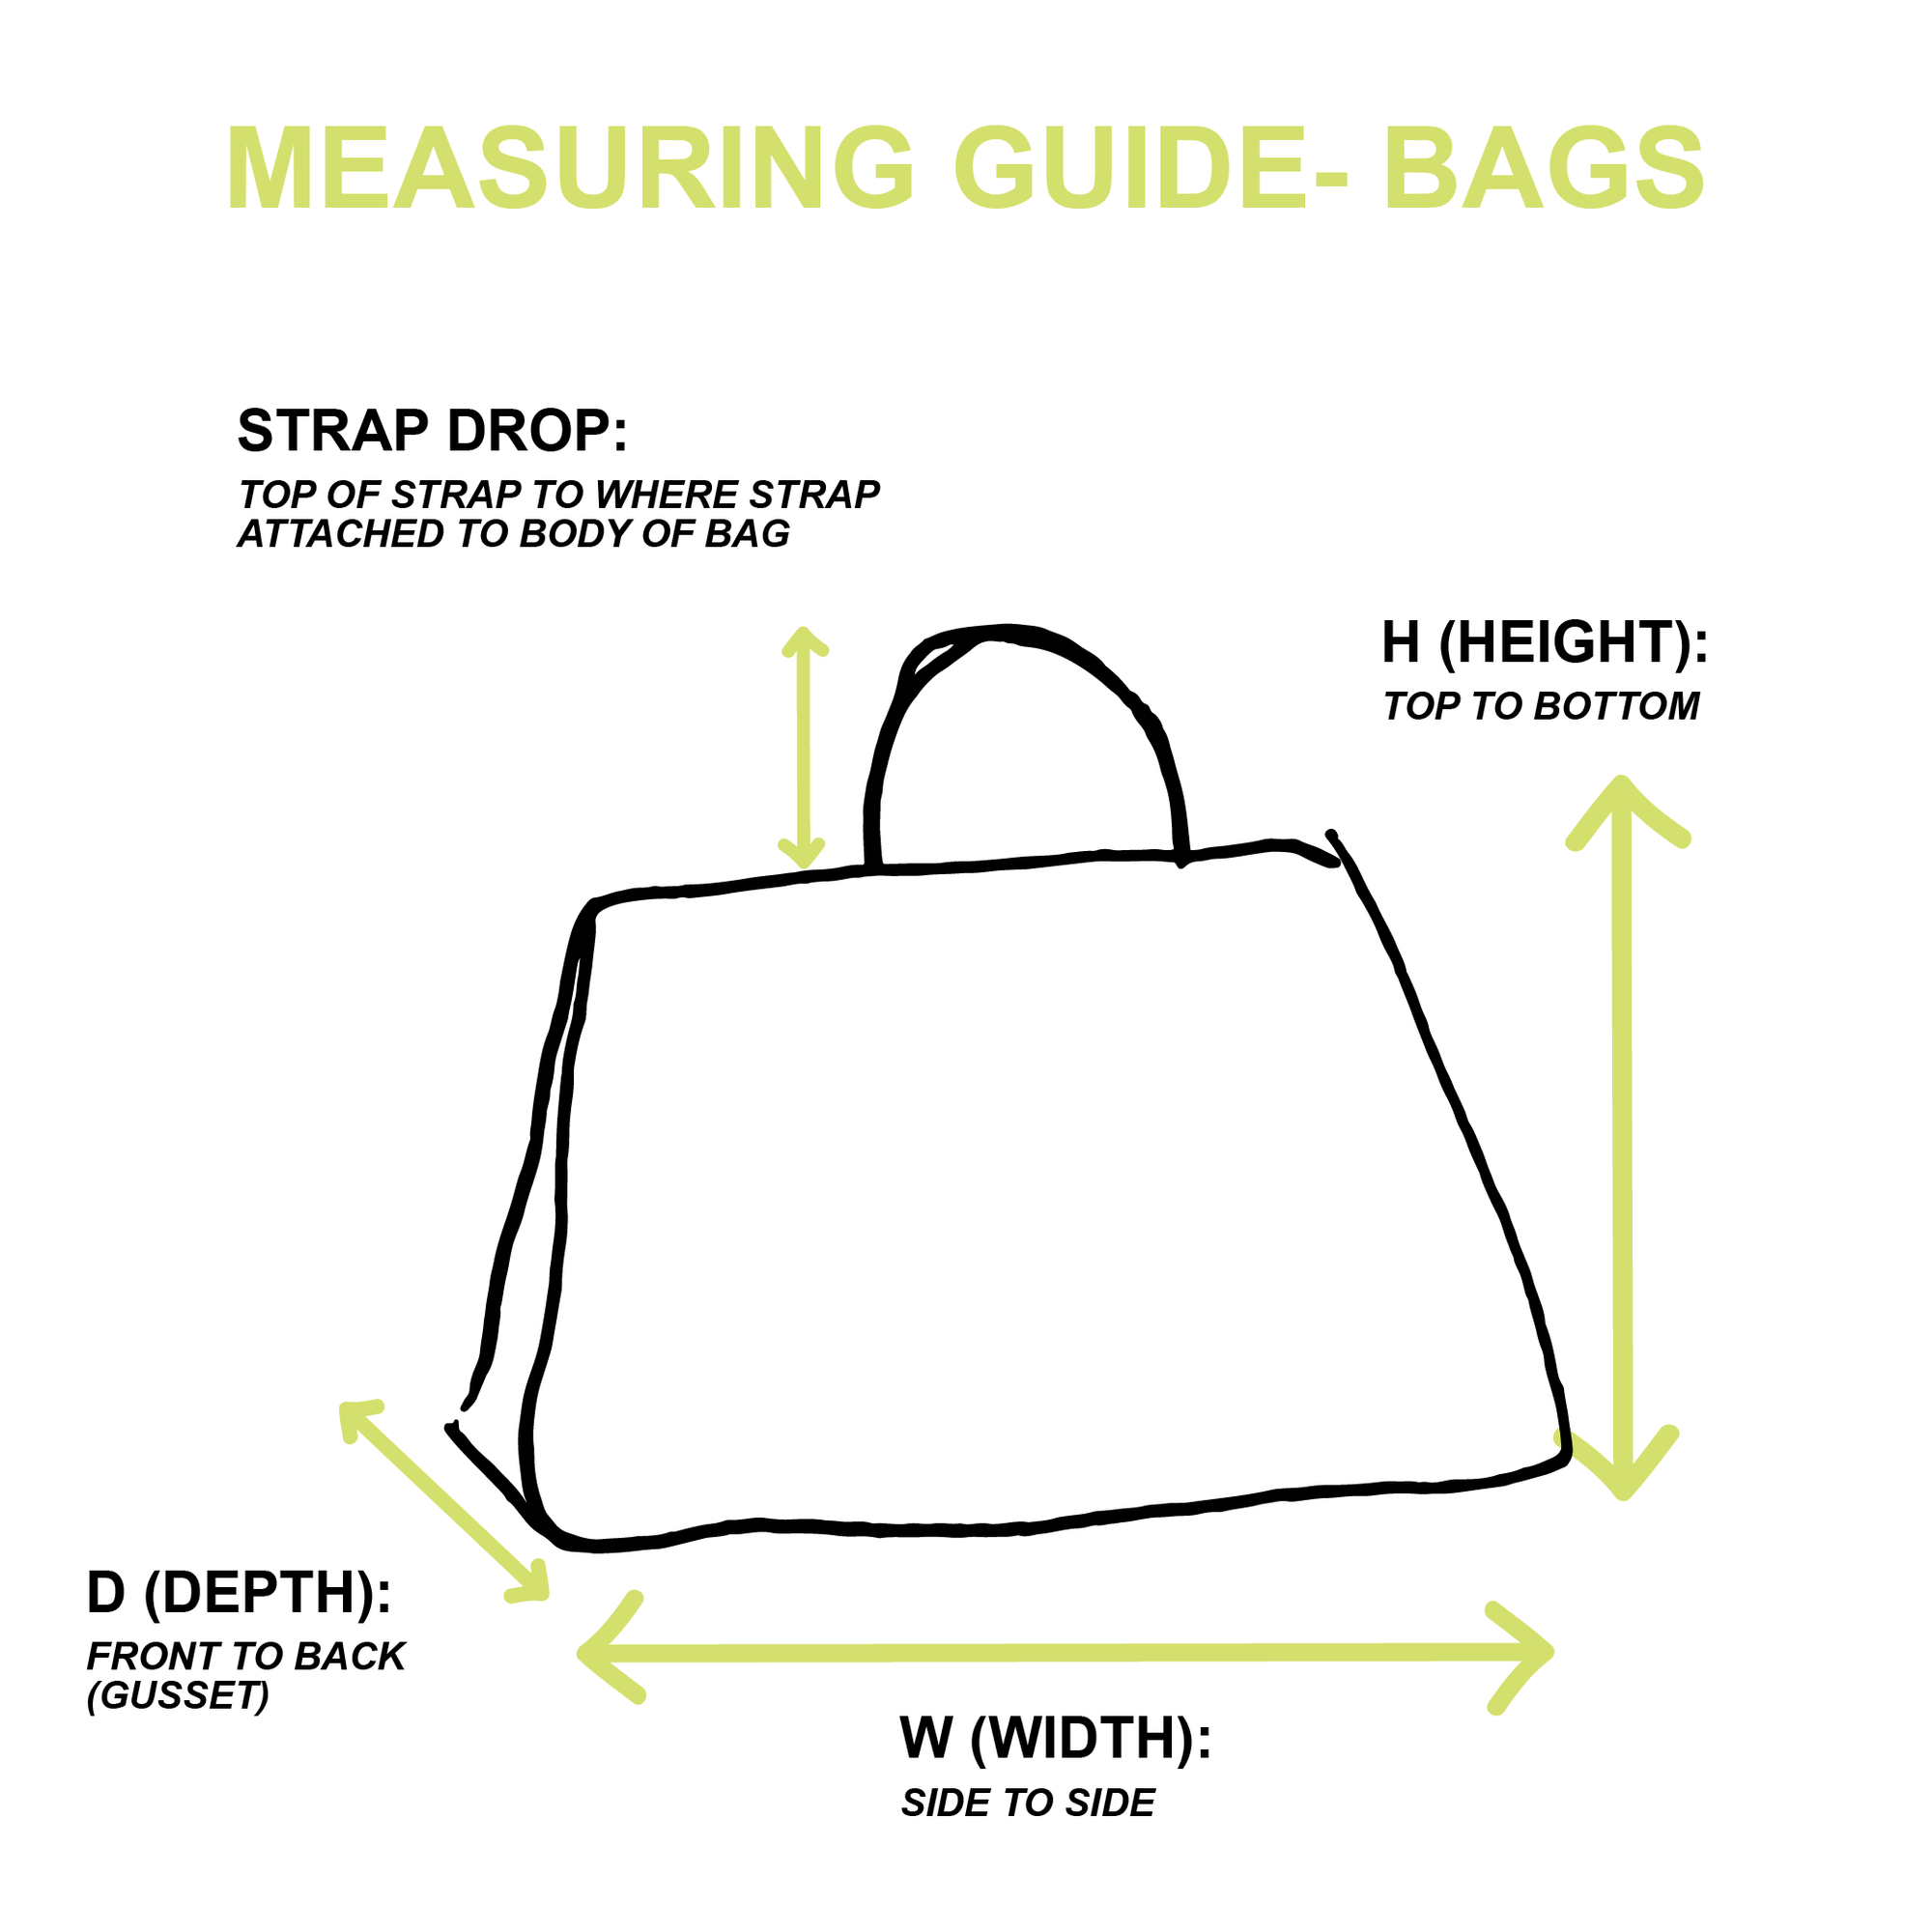 Moschino Cherry Shoulder Bag - Handbags